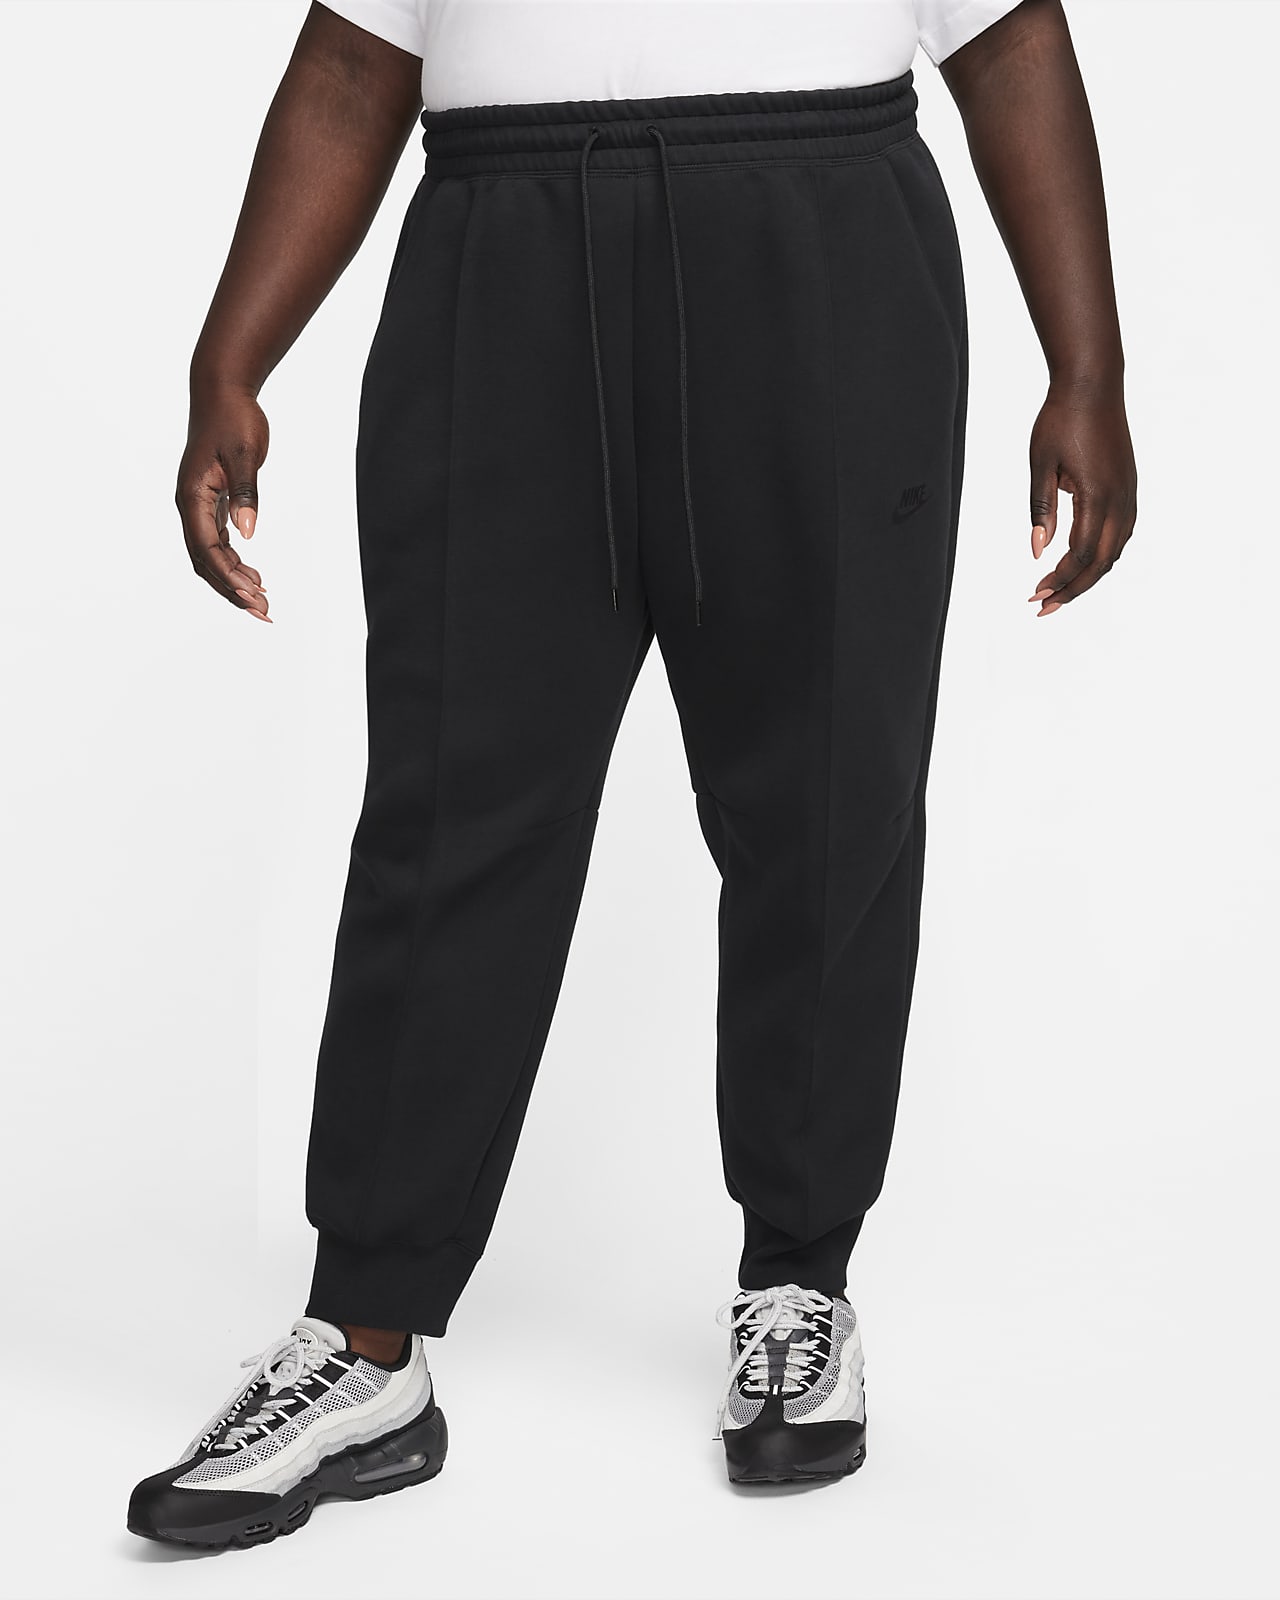 Pantalon de jogging taille mi-haute Nike Sportswear Tech Fleece